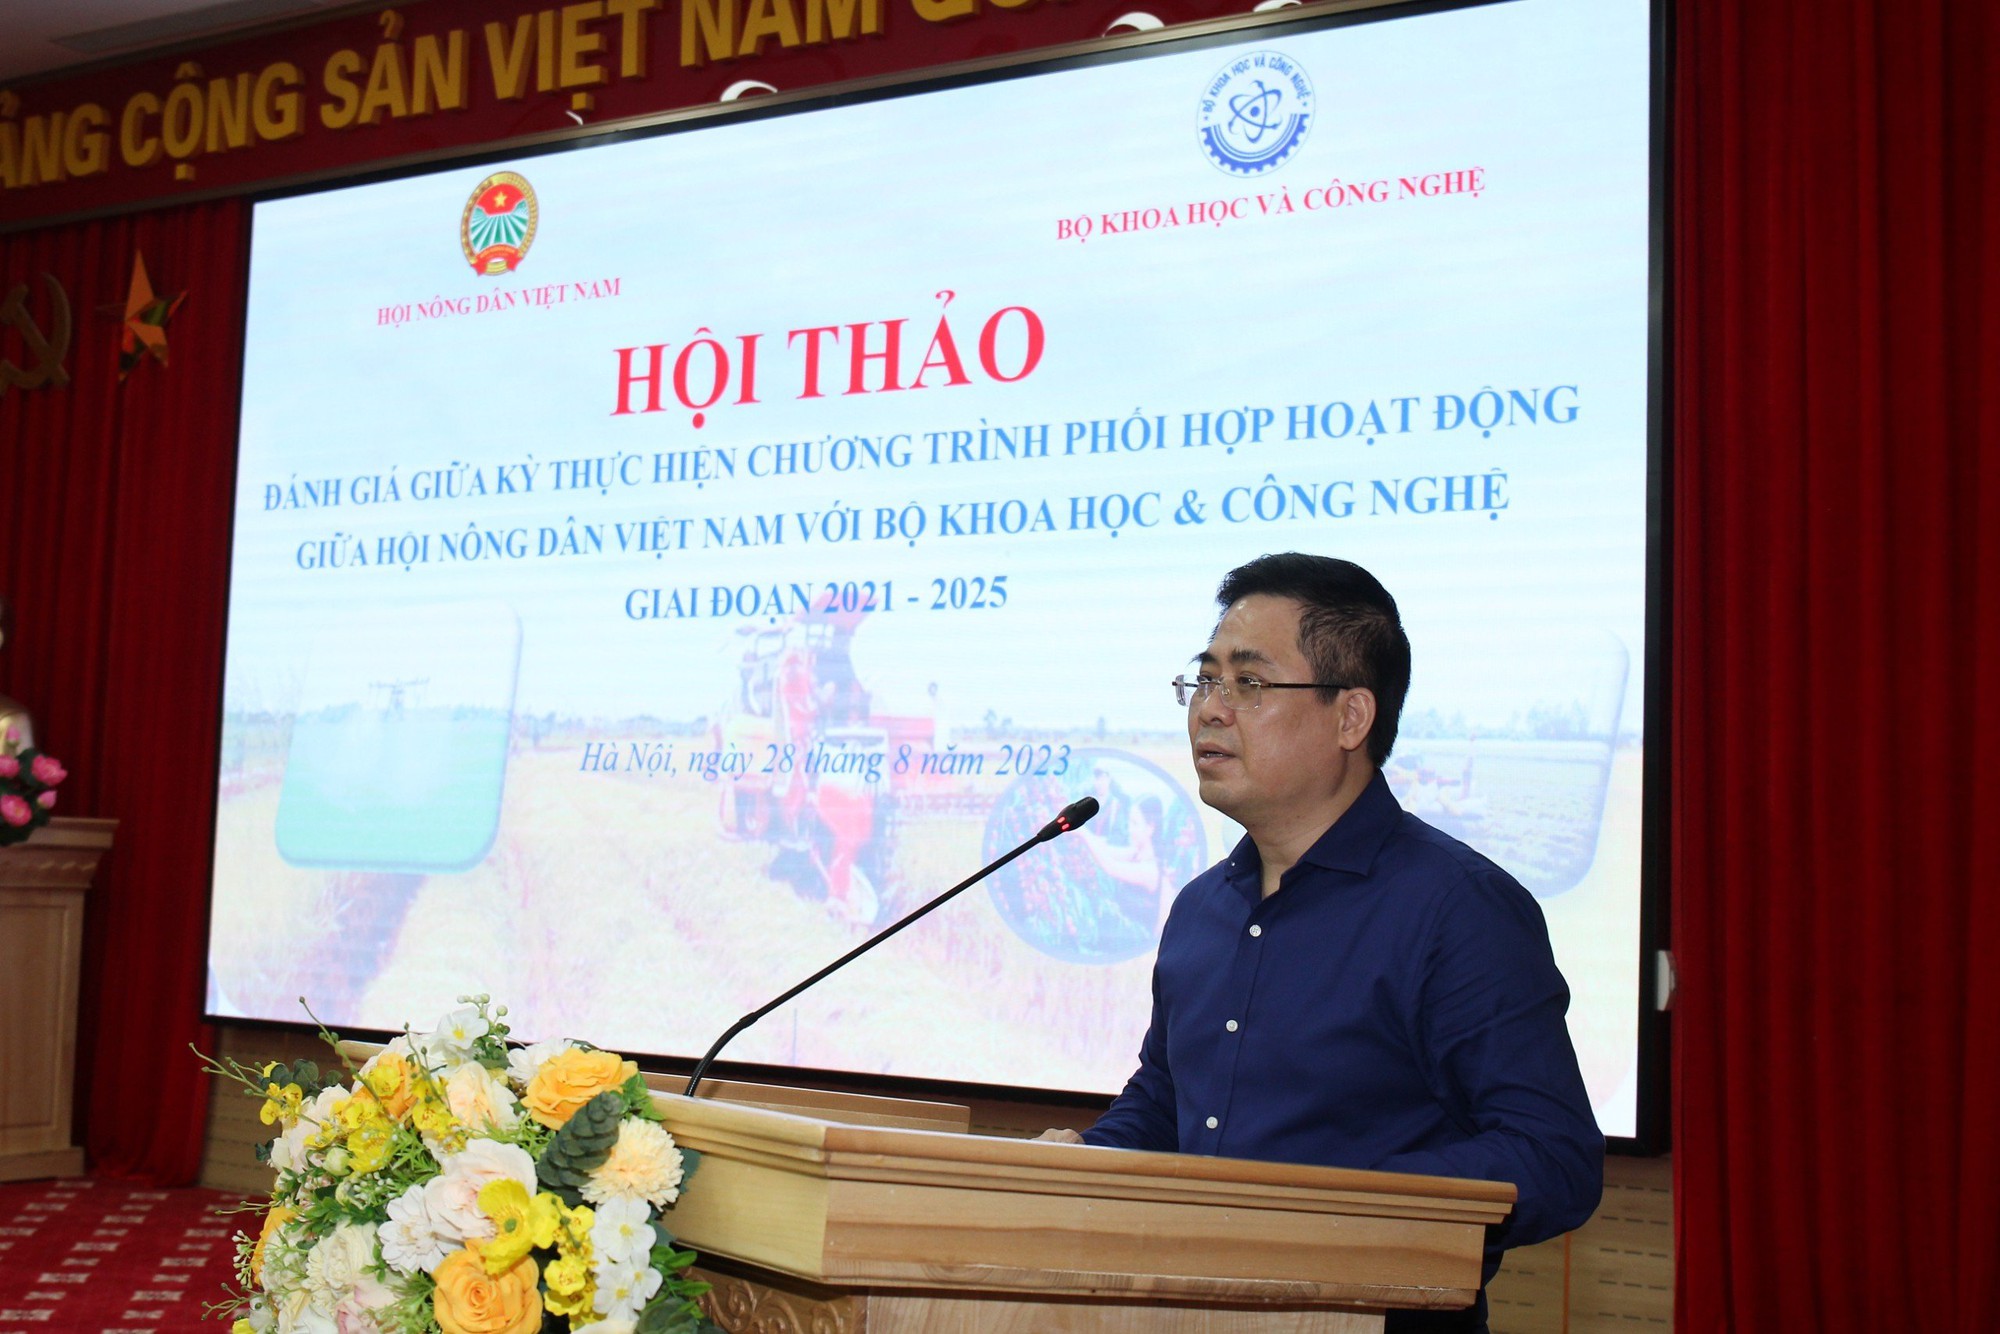 Hội thảo sơ kết đánh giá chương trình phối hợp giữa Hội Nông dân Việt Nam và Bộ Khoa học công nghệ - Ảnh 6.